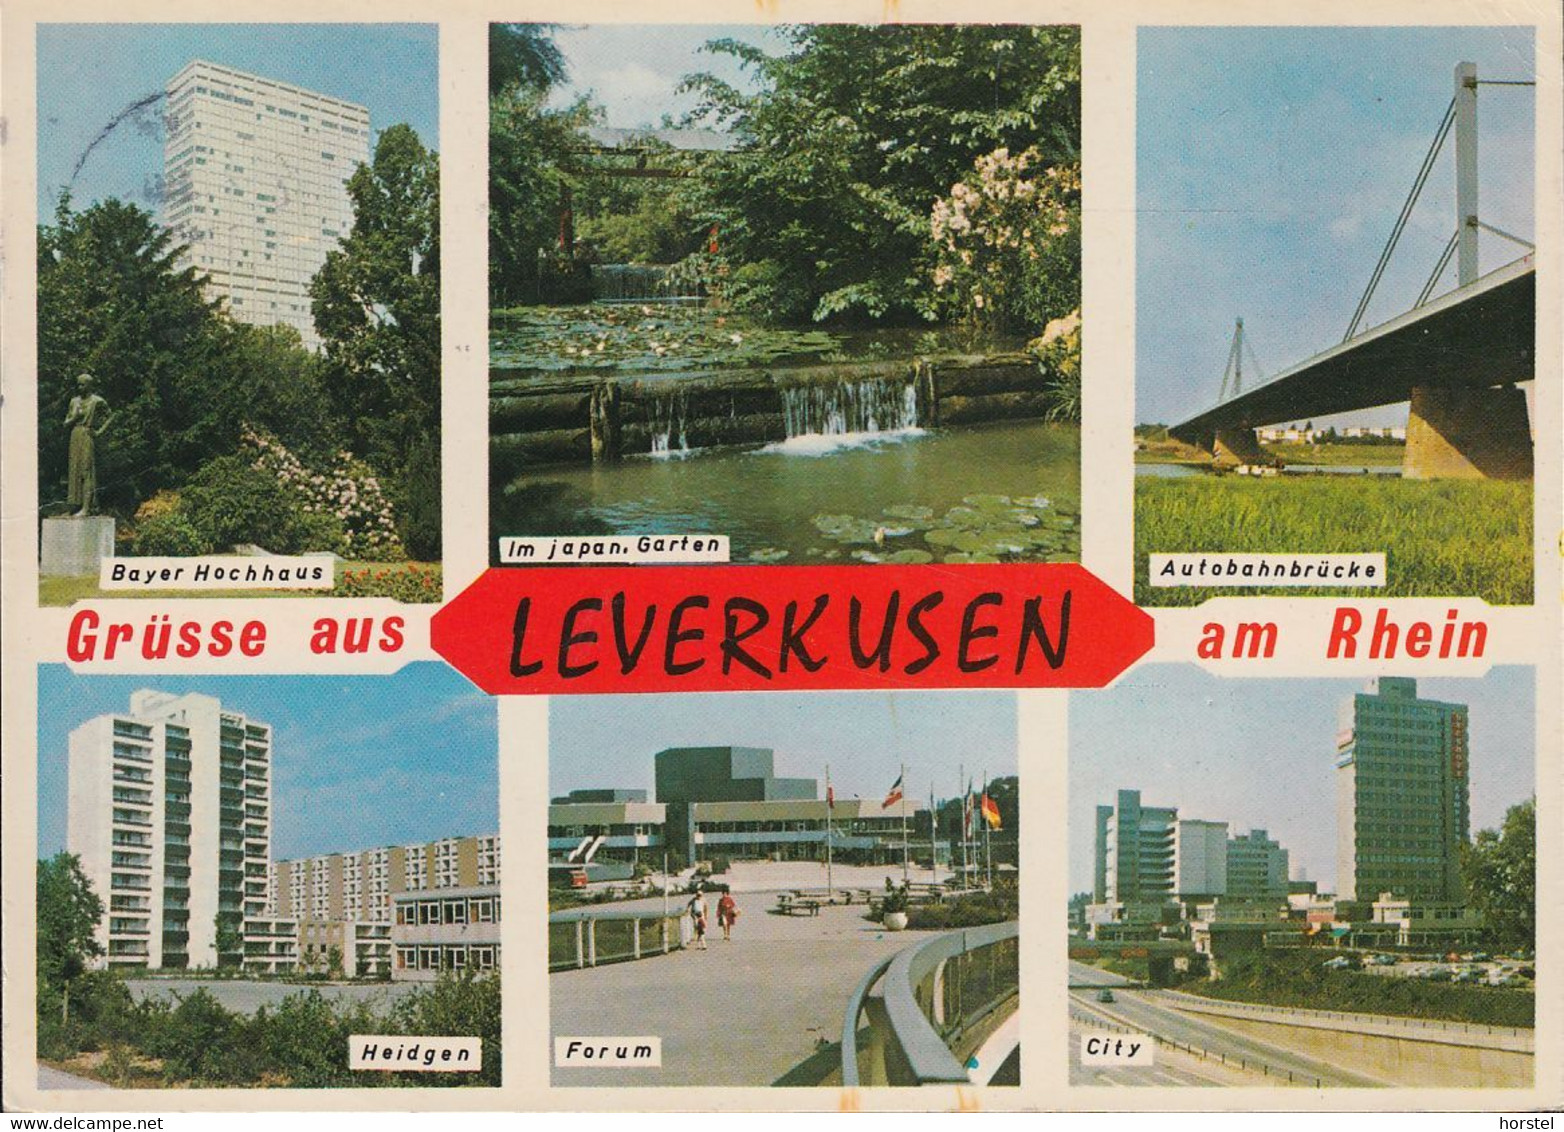 D-51373 Leverkusen - Alte Ansichten - Bayer Hochhaus - Autobahnbrücke - Heidgen - Forum - Nice Stamp "cept" - Leverkusen